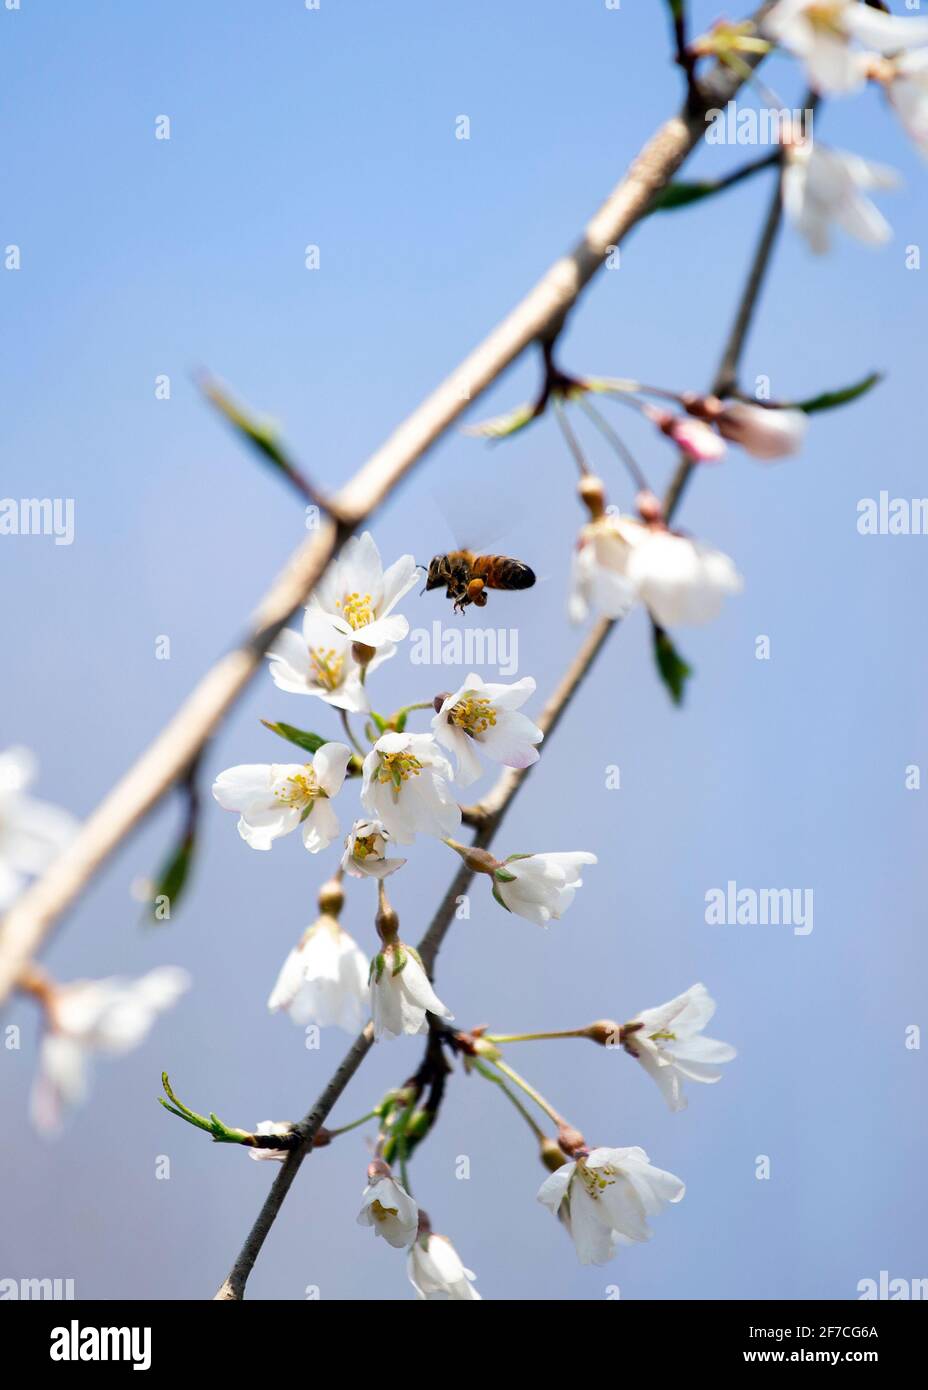 Les abeilles pollinisent les fleurs de cerisier, les bourgeons de printemps roses et blancs, les nouvelles feuilles vertes commencent à fleurir le long des branches d'arbres le jour ensoleillé d'avril Banque D'Images